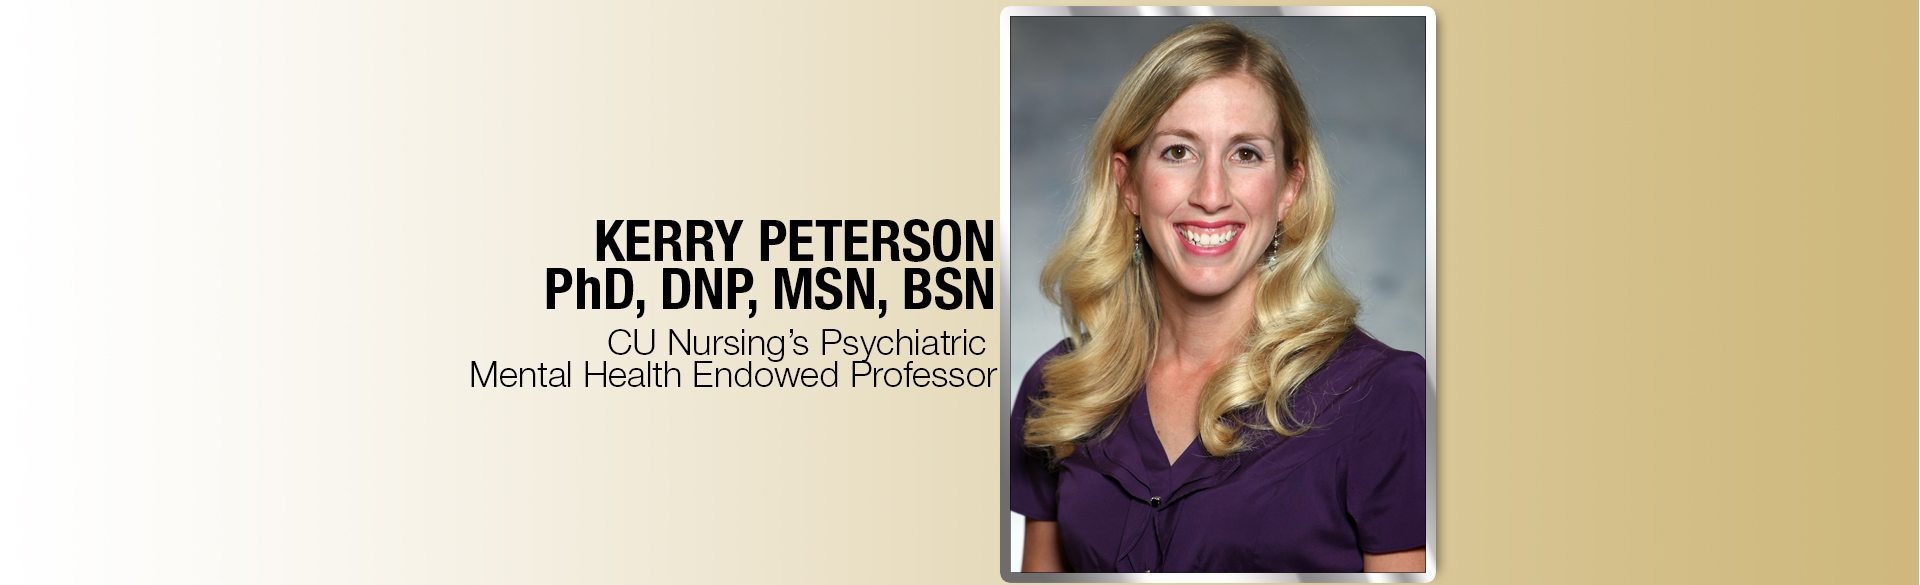 Dr. Kerry Peterson (PhD, DNP, MSN, BSN) 